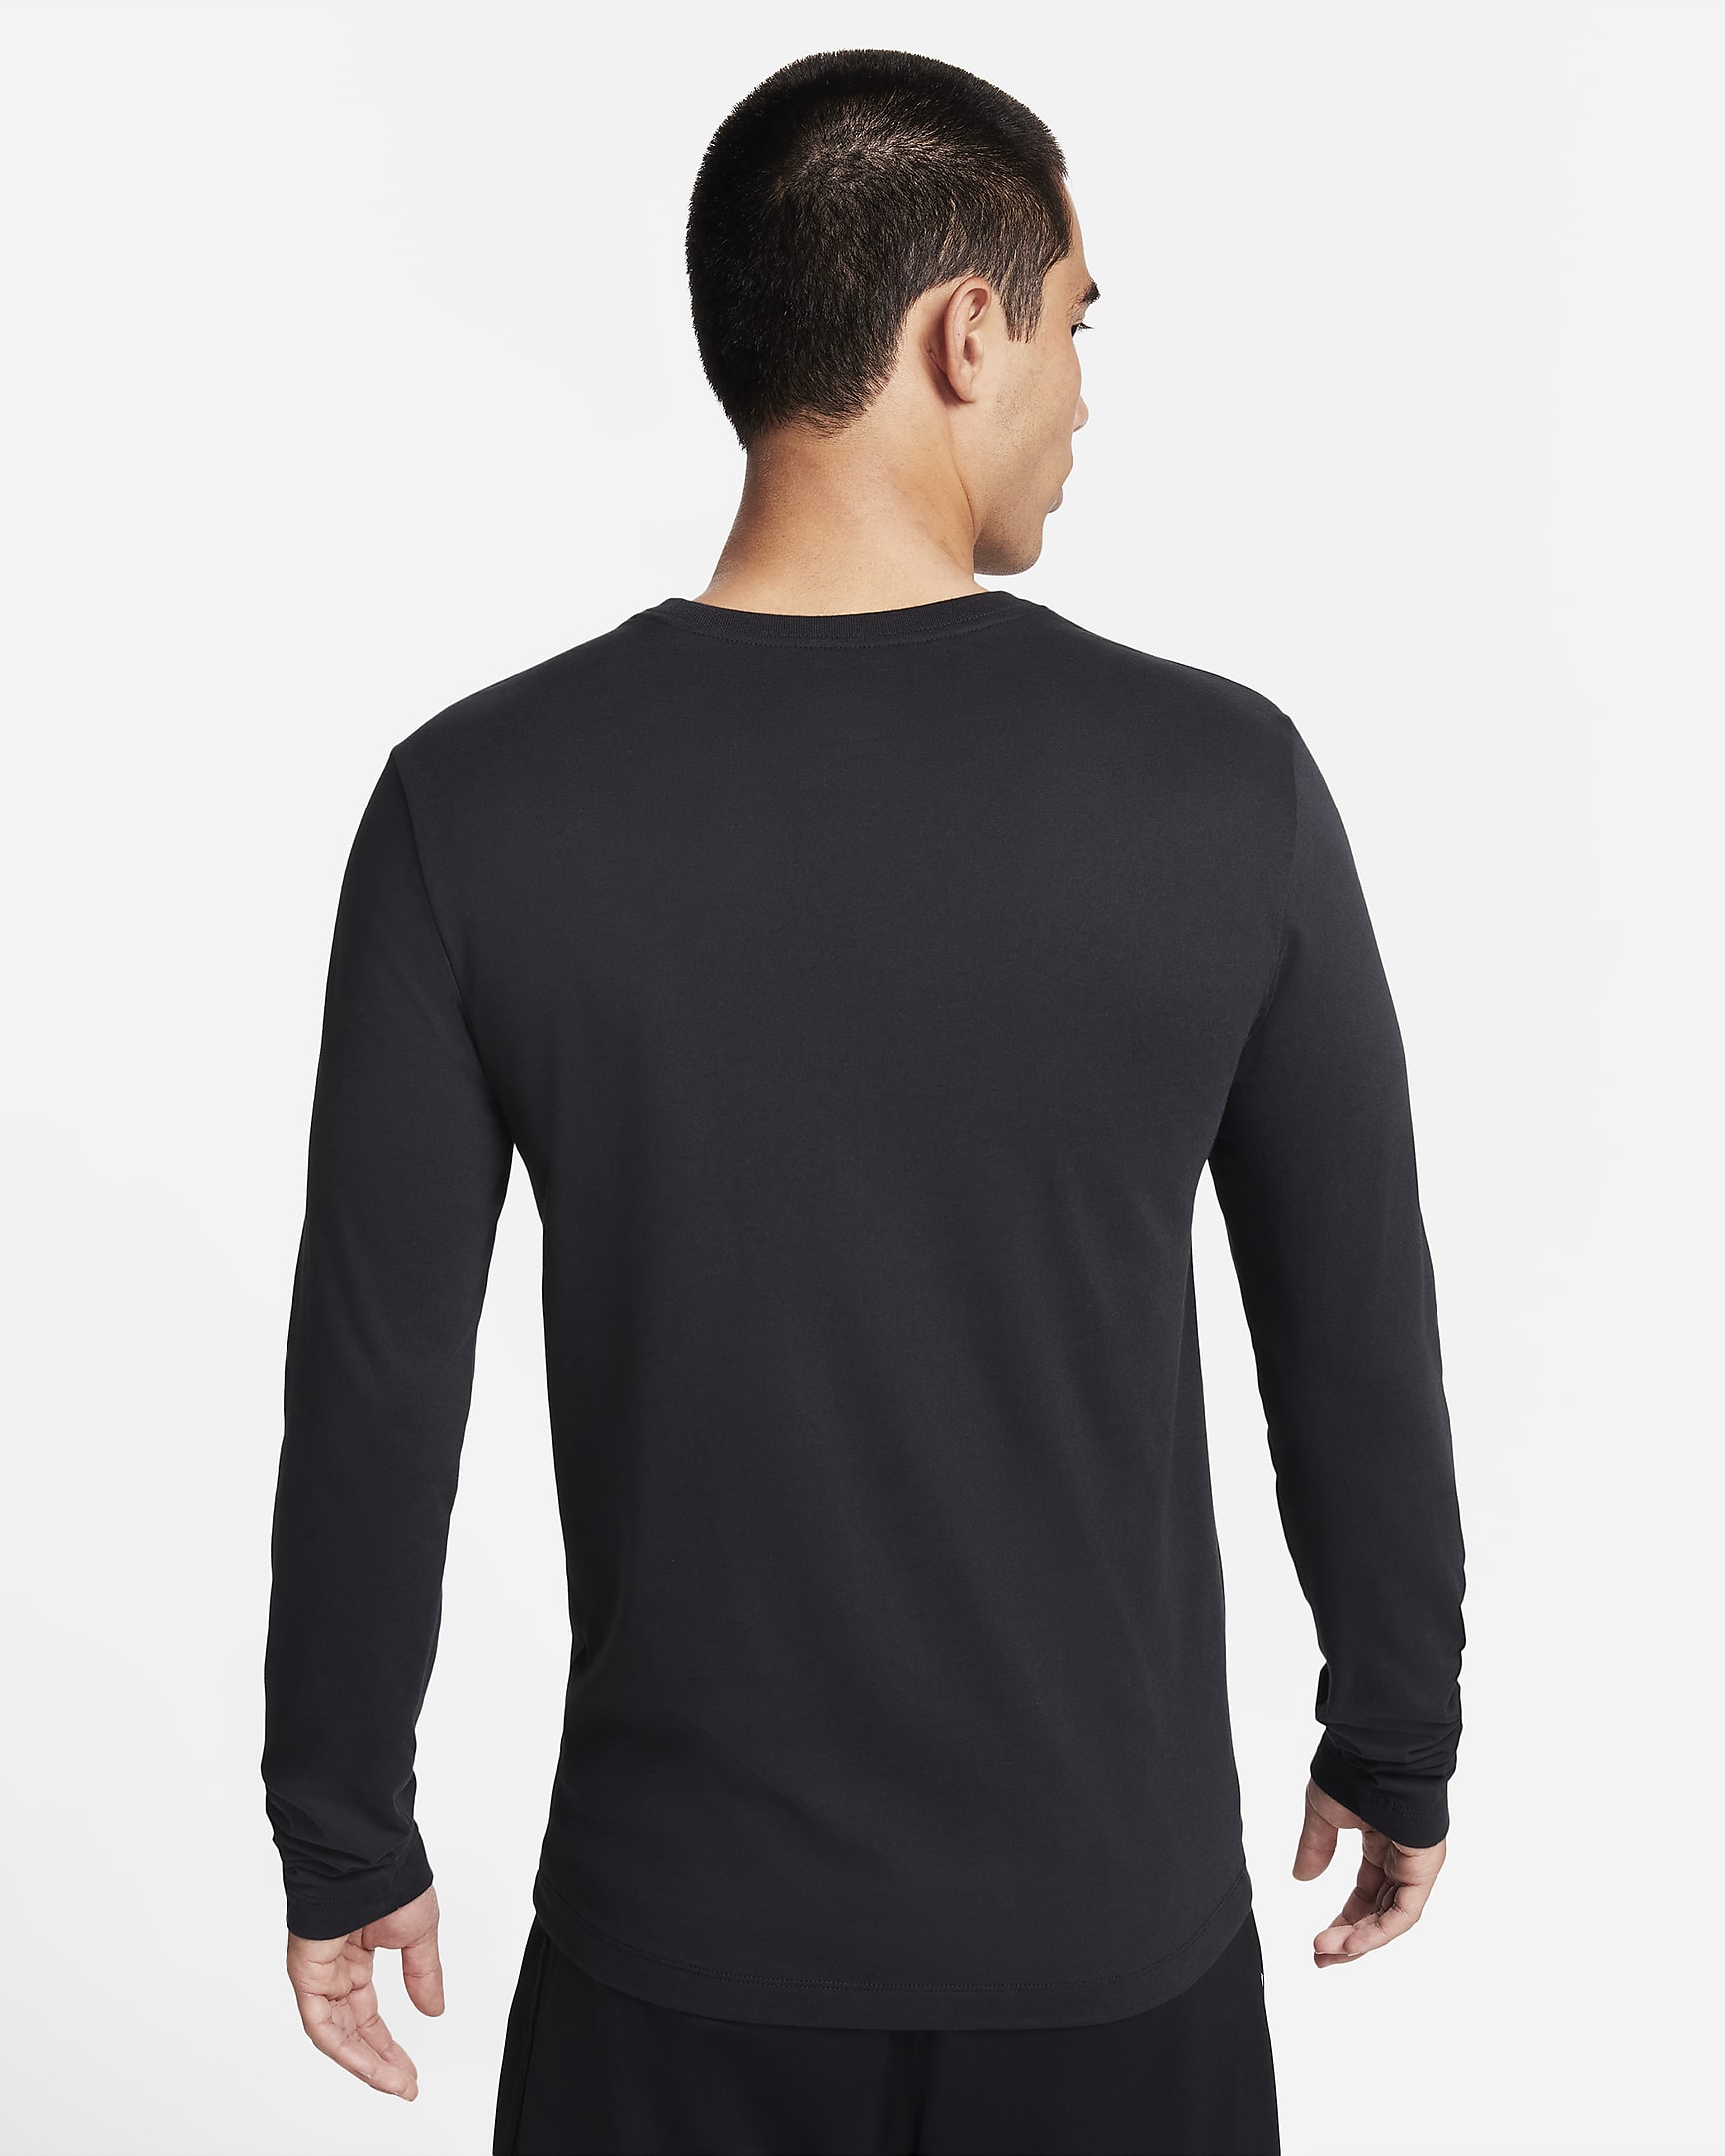 Nike Dri-FIT Men's Long-Sleeve Fitness T-Shirt. Nike JP